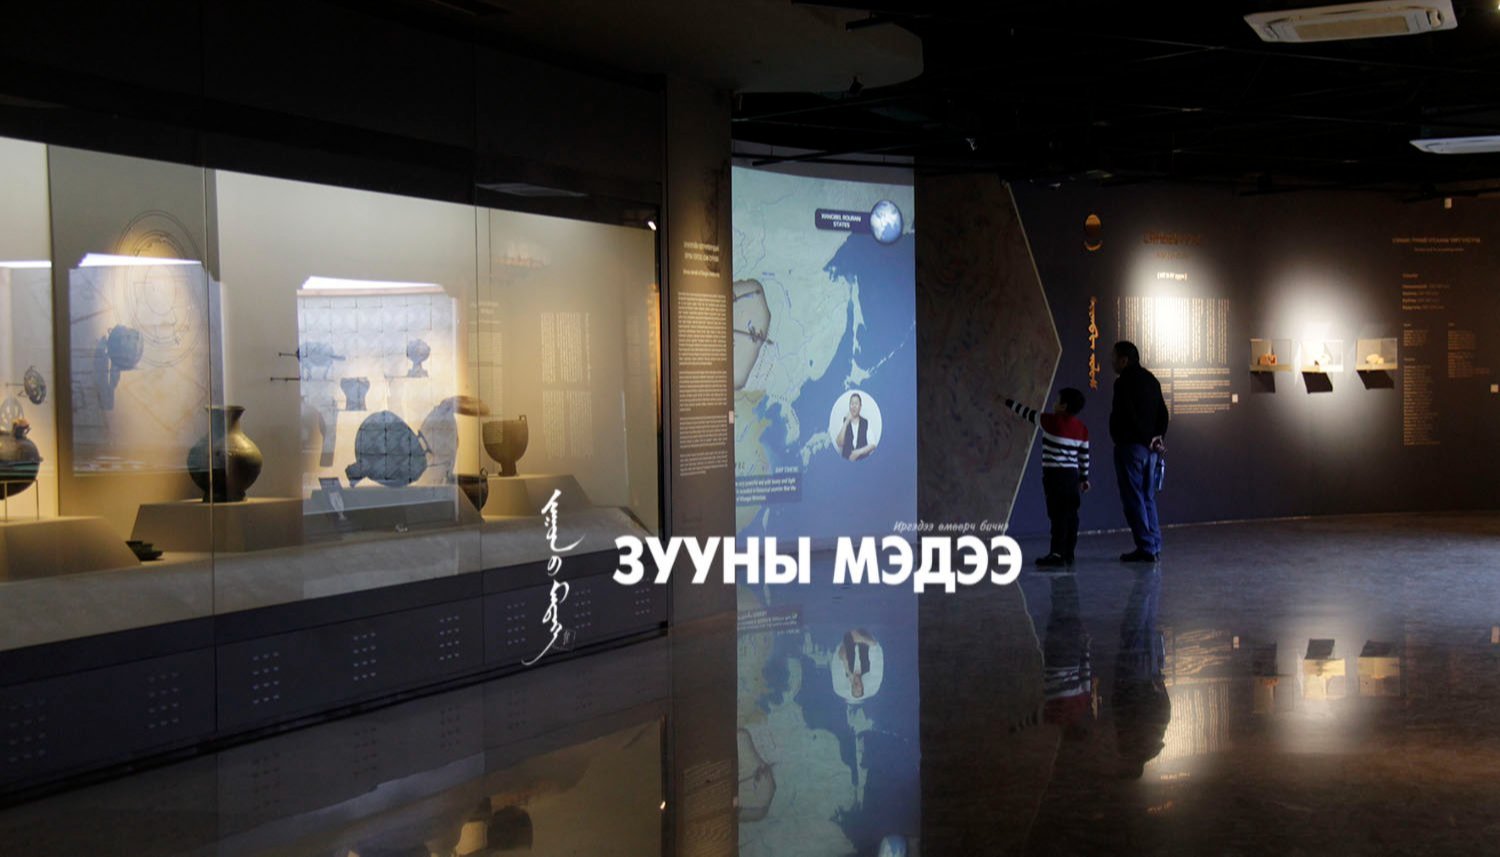 Фото: Монголын анхны панарома дэлгэц бүхий музейн виртуал өрөөг нээлээ